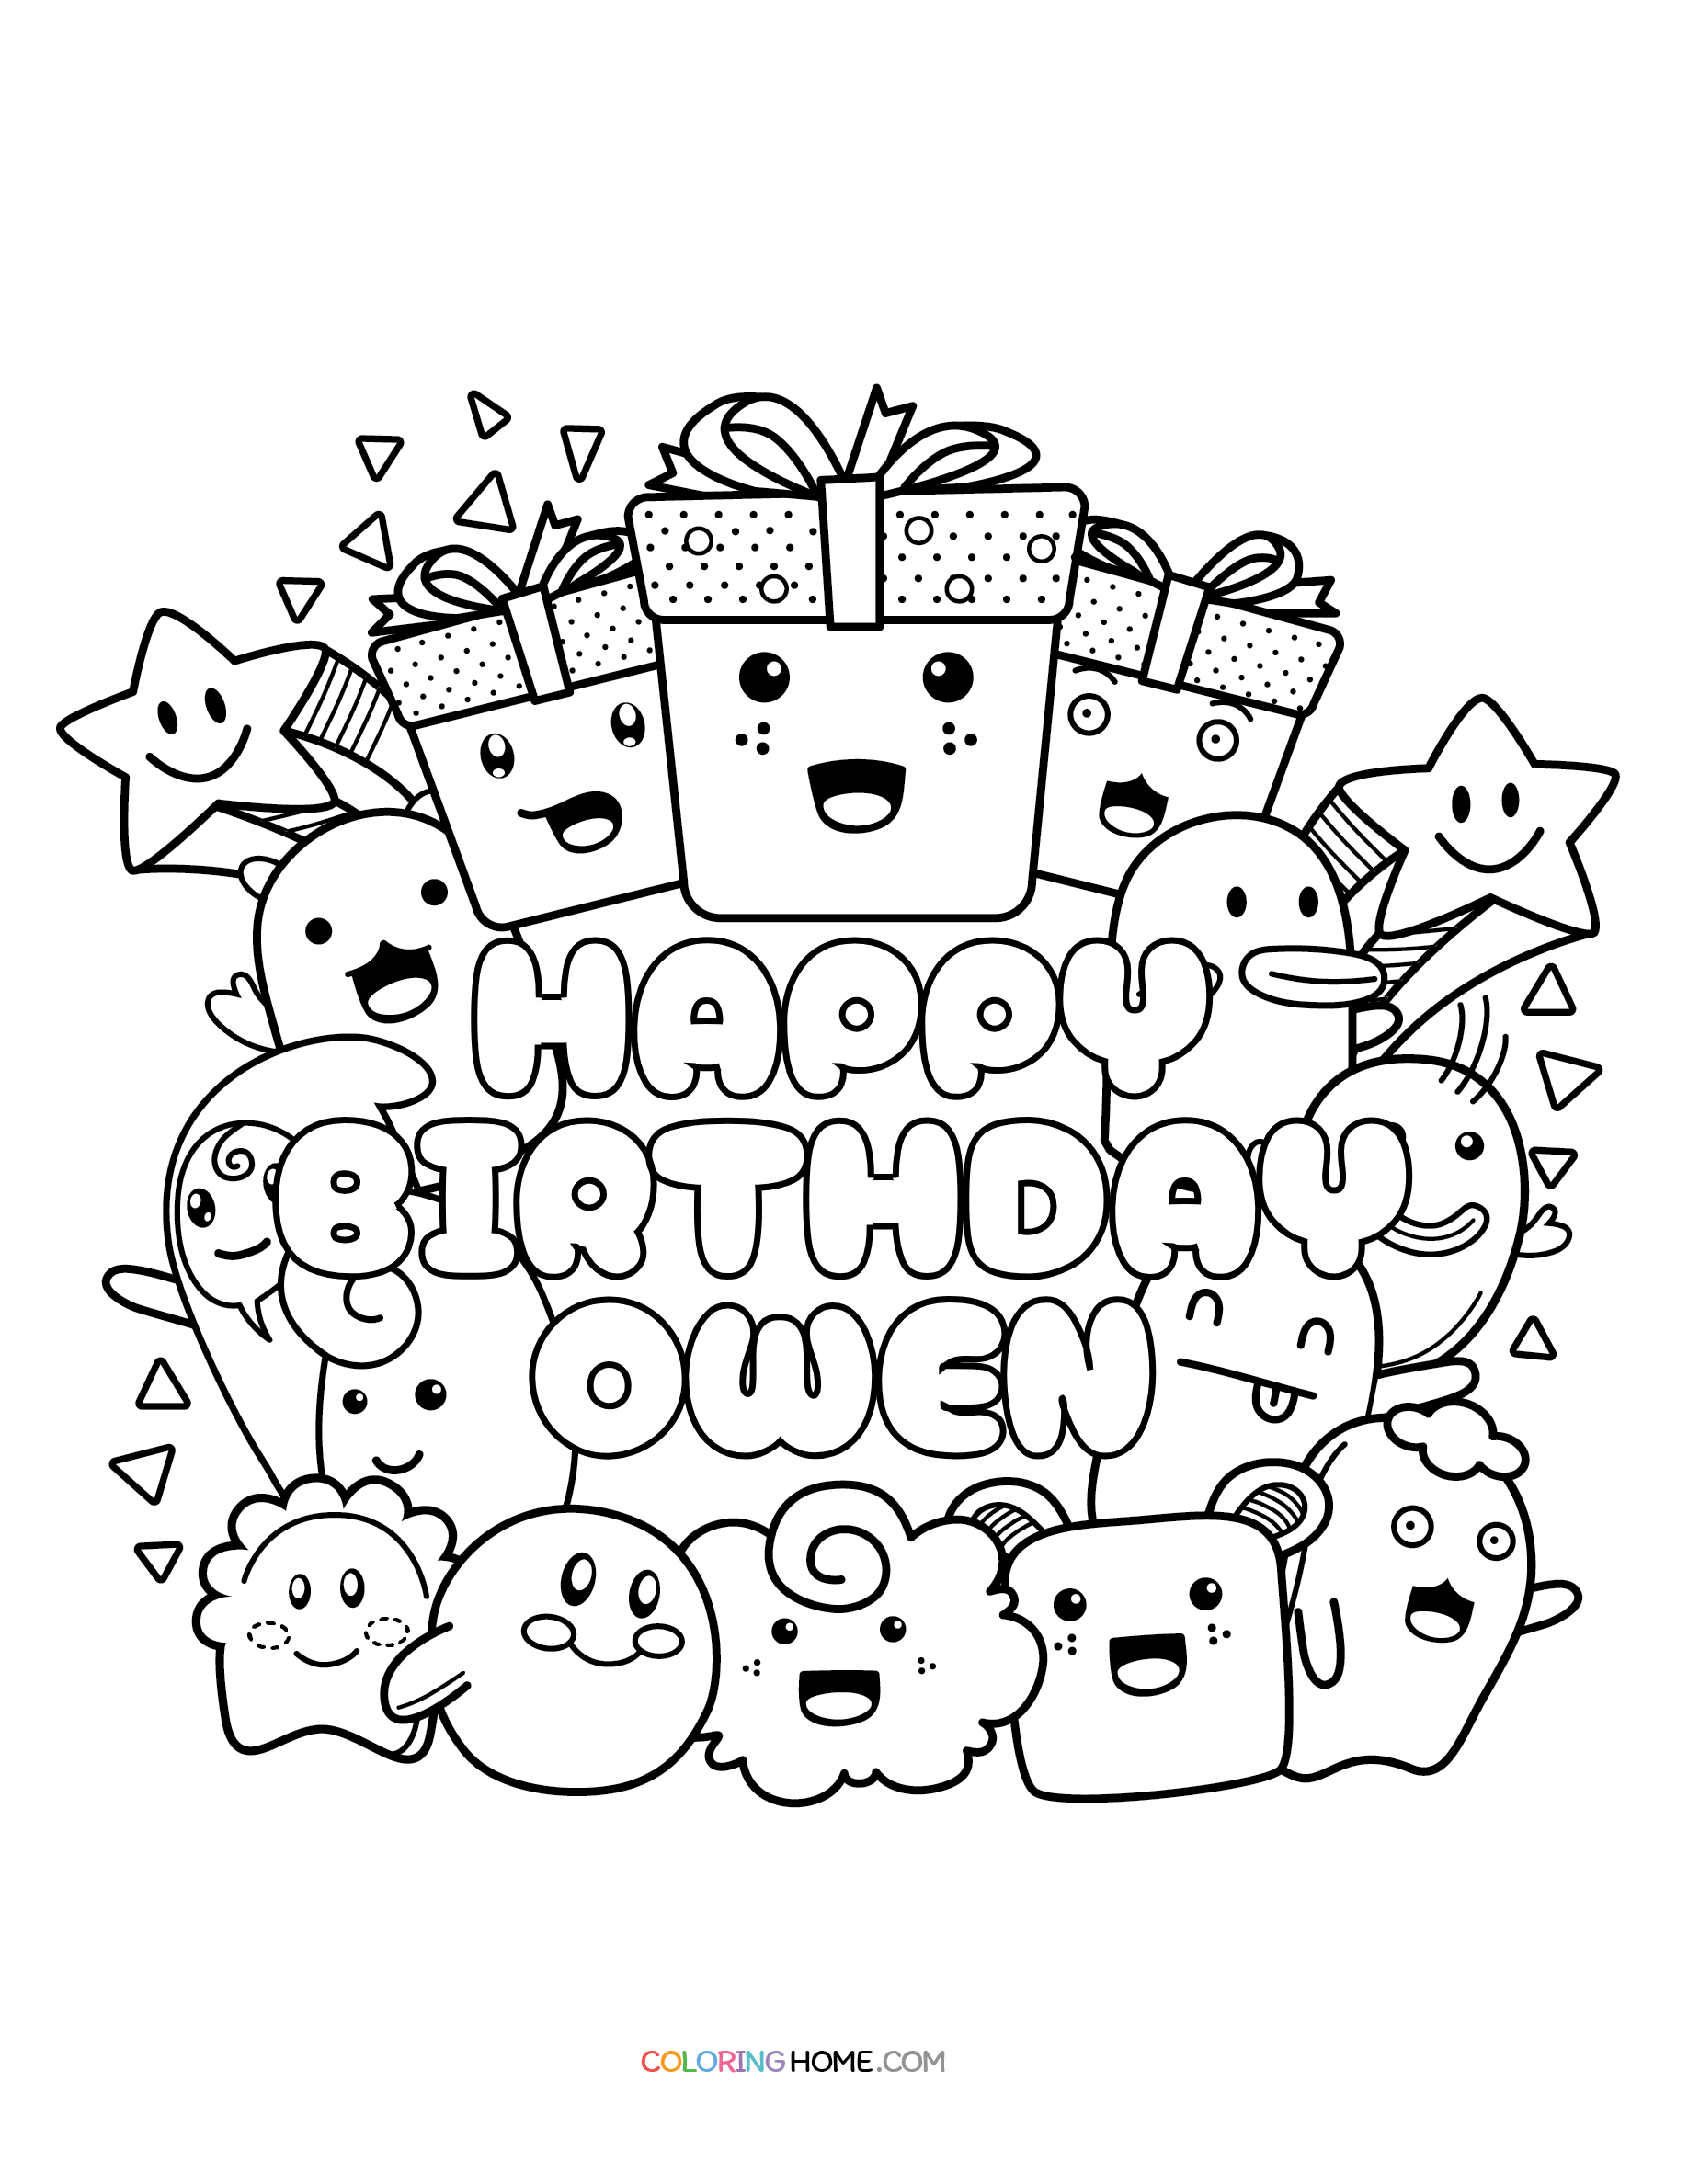 Happy Birthday Owen coloring page